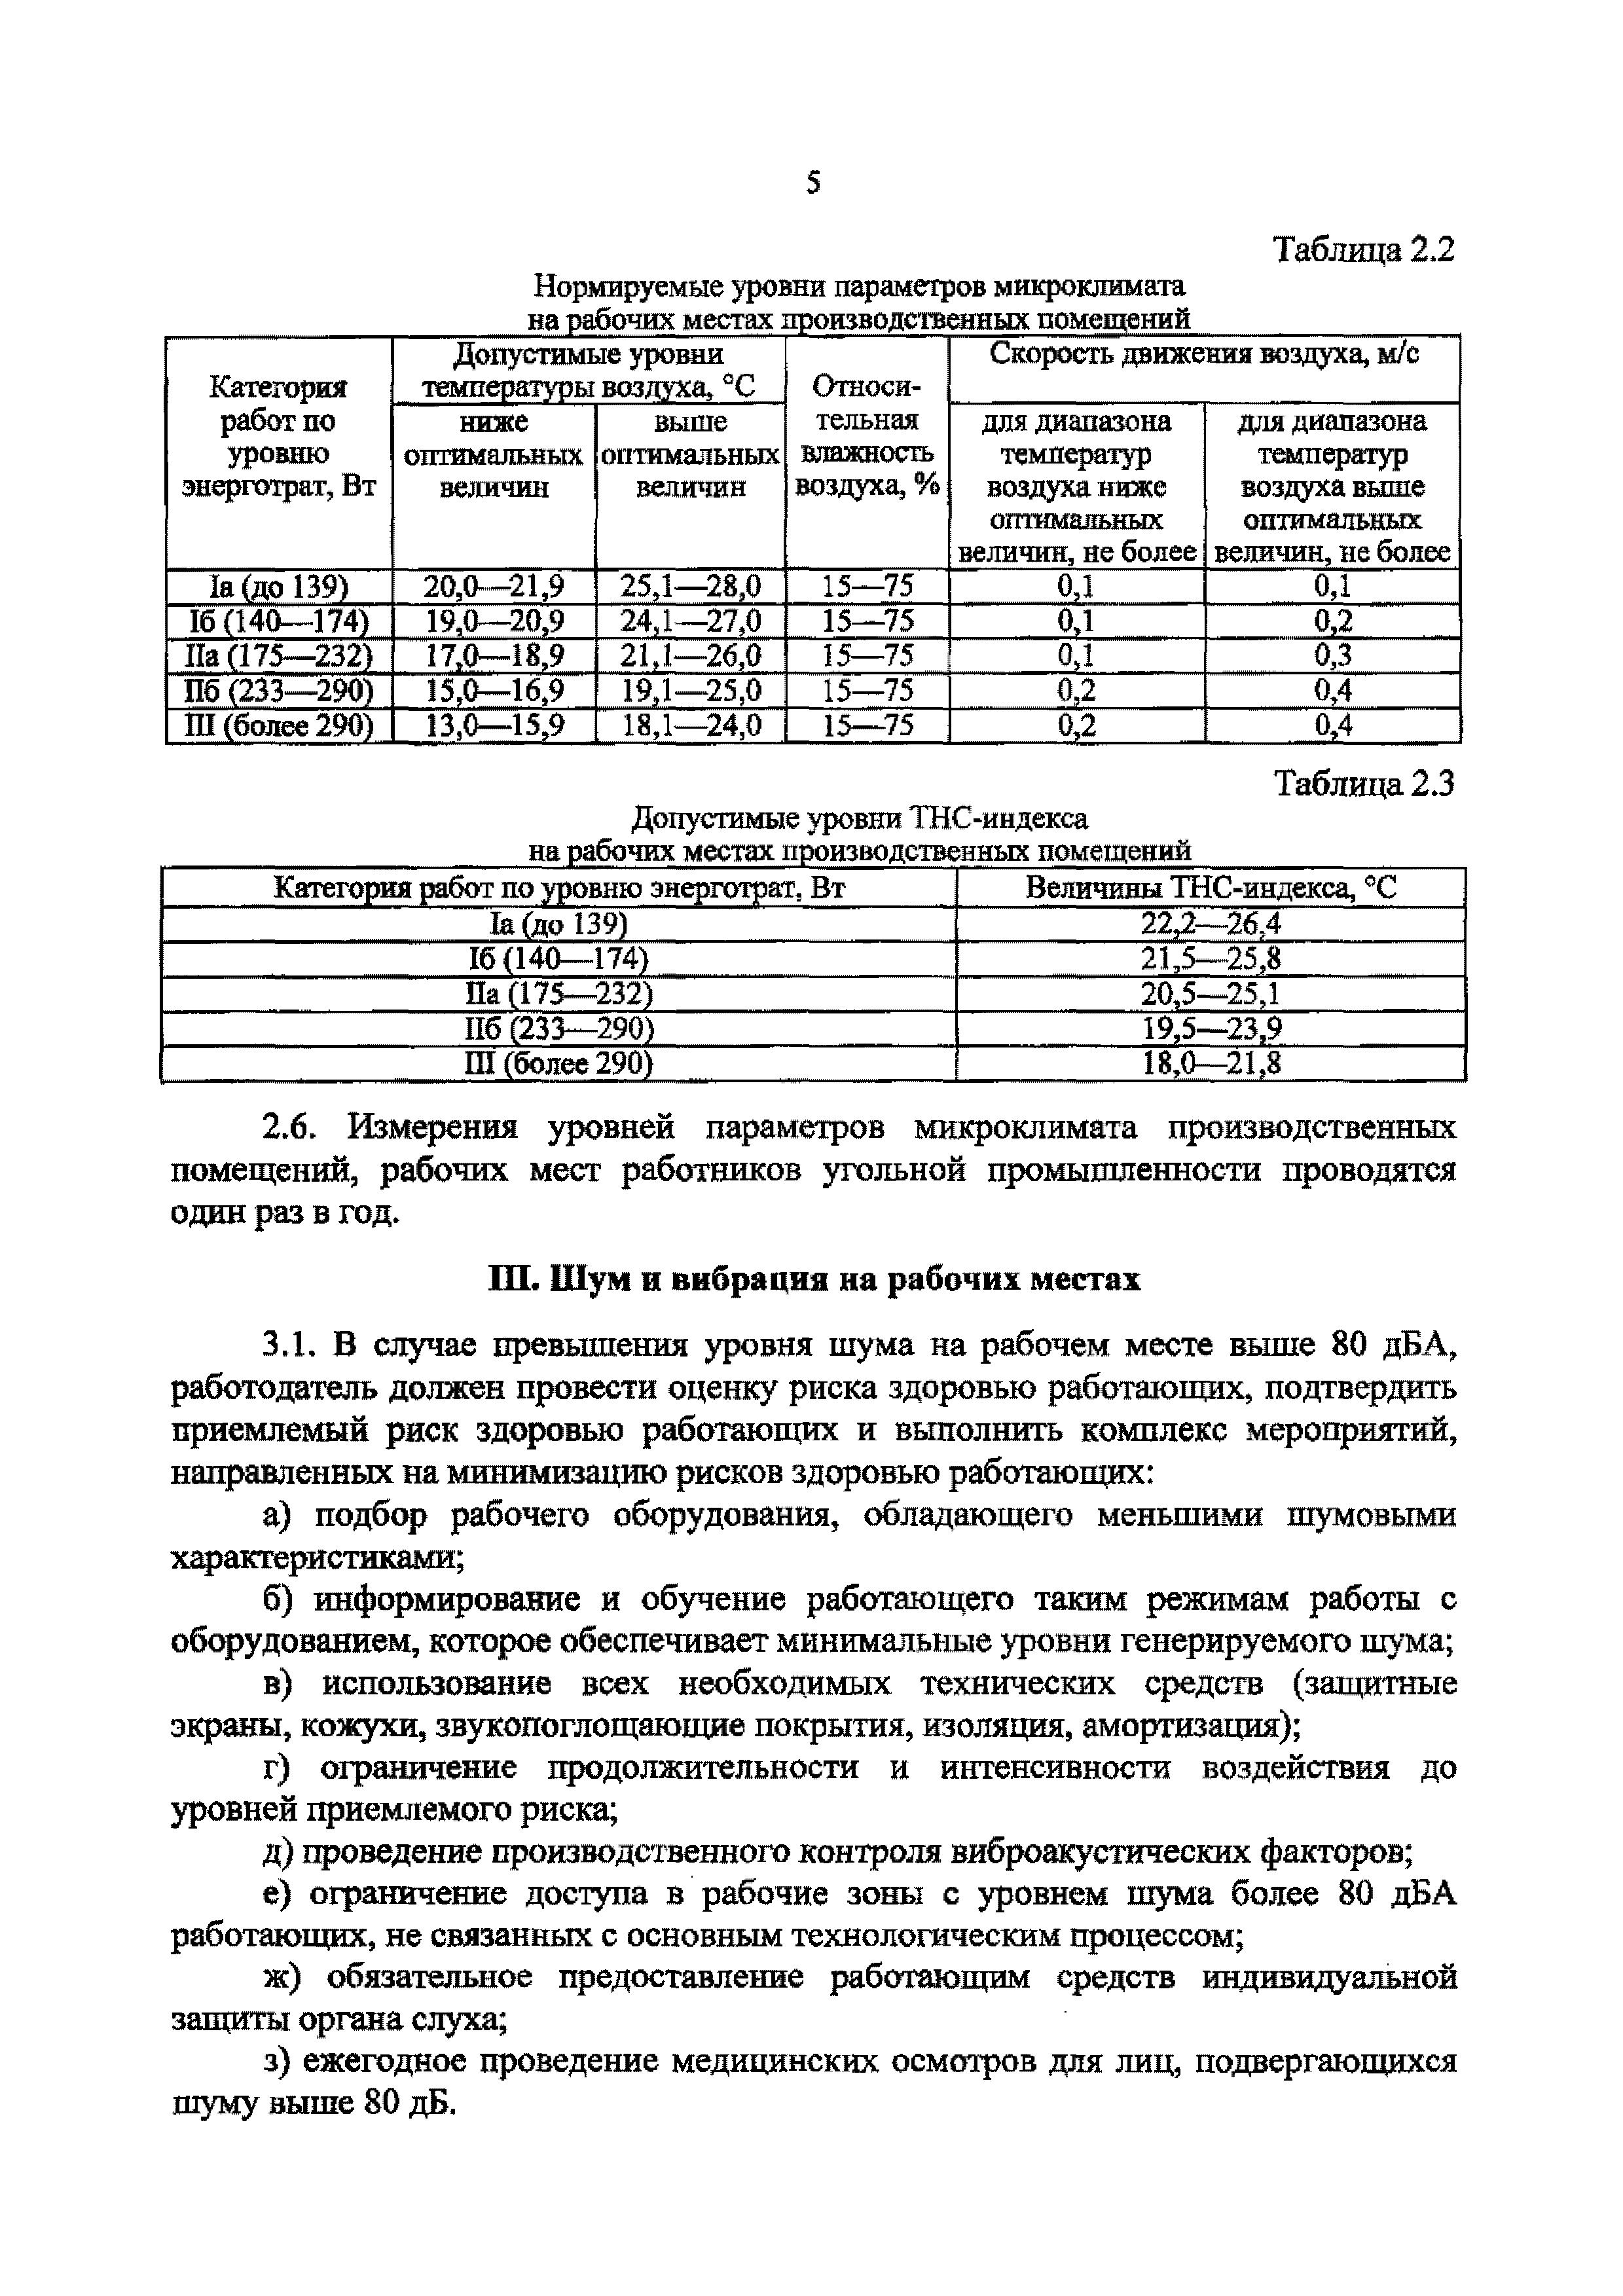 СанПиН 2.2.4.3483-17